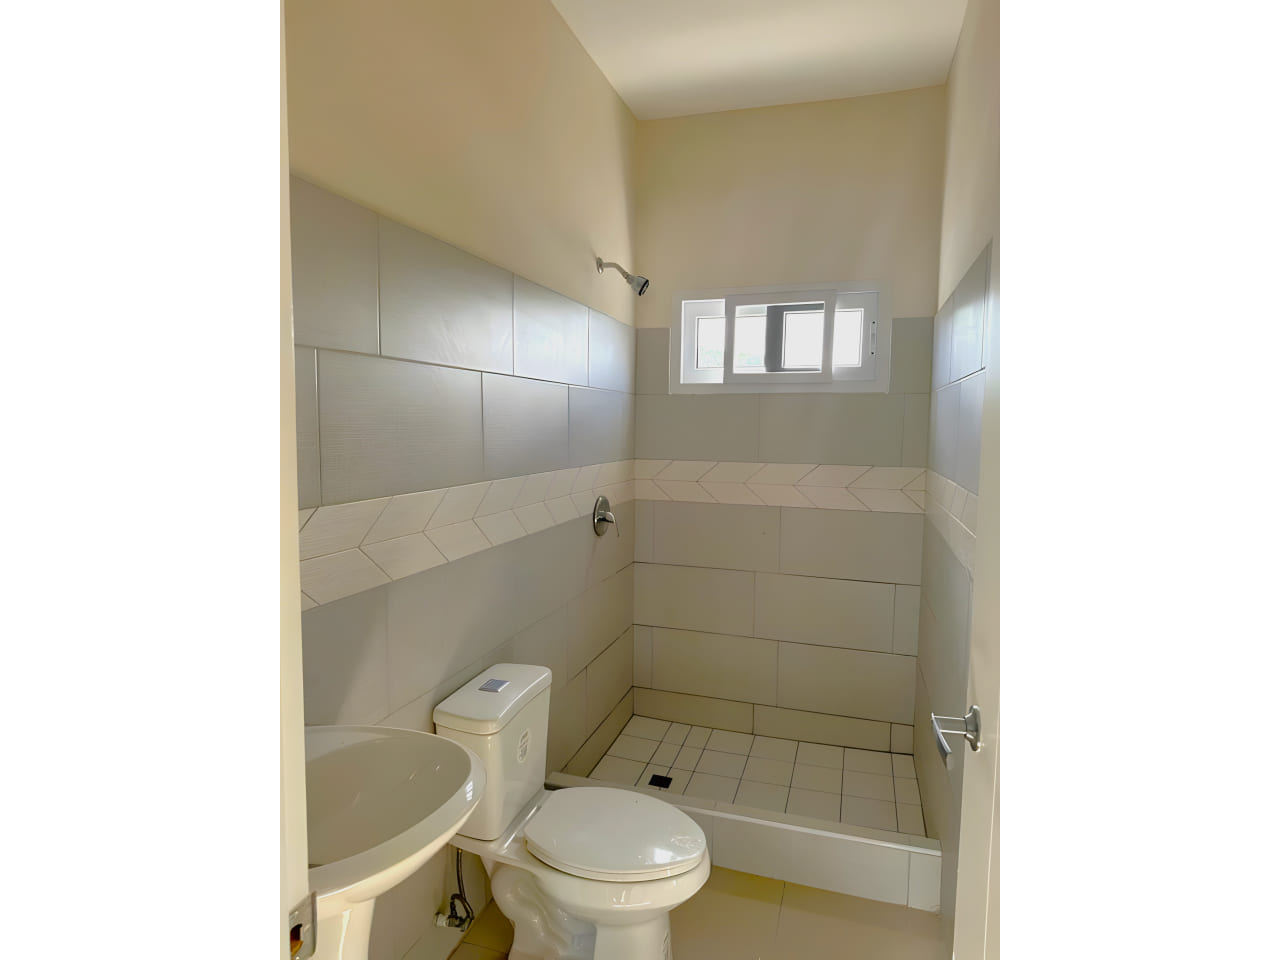 Área de baño cuenta con regadera con suelo de ceramica, retrete y lavamanos de color blanco a juego, con paredes de coradas con ceramica.